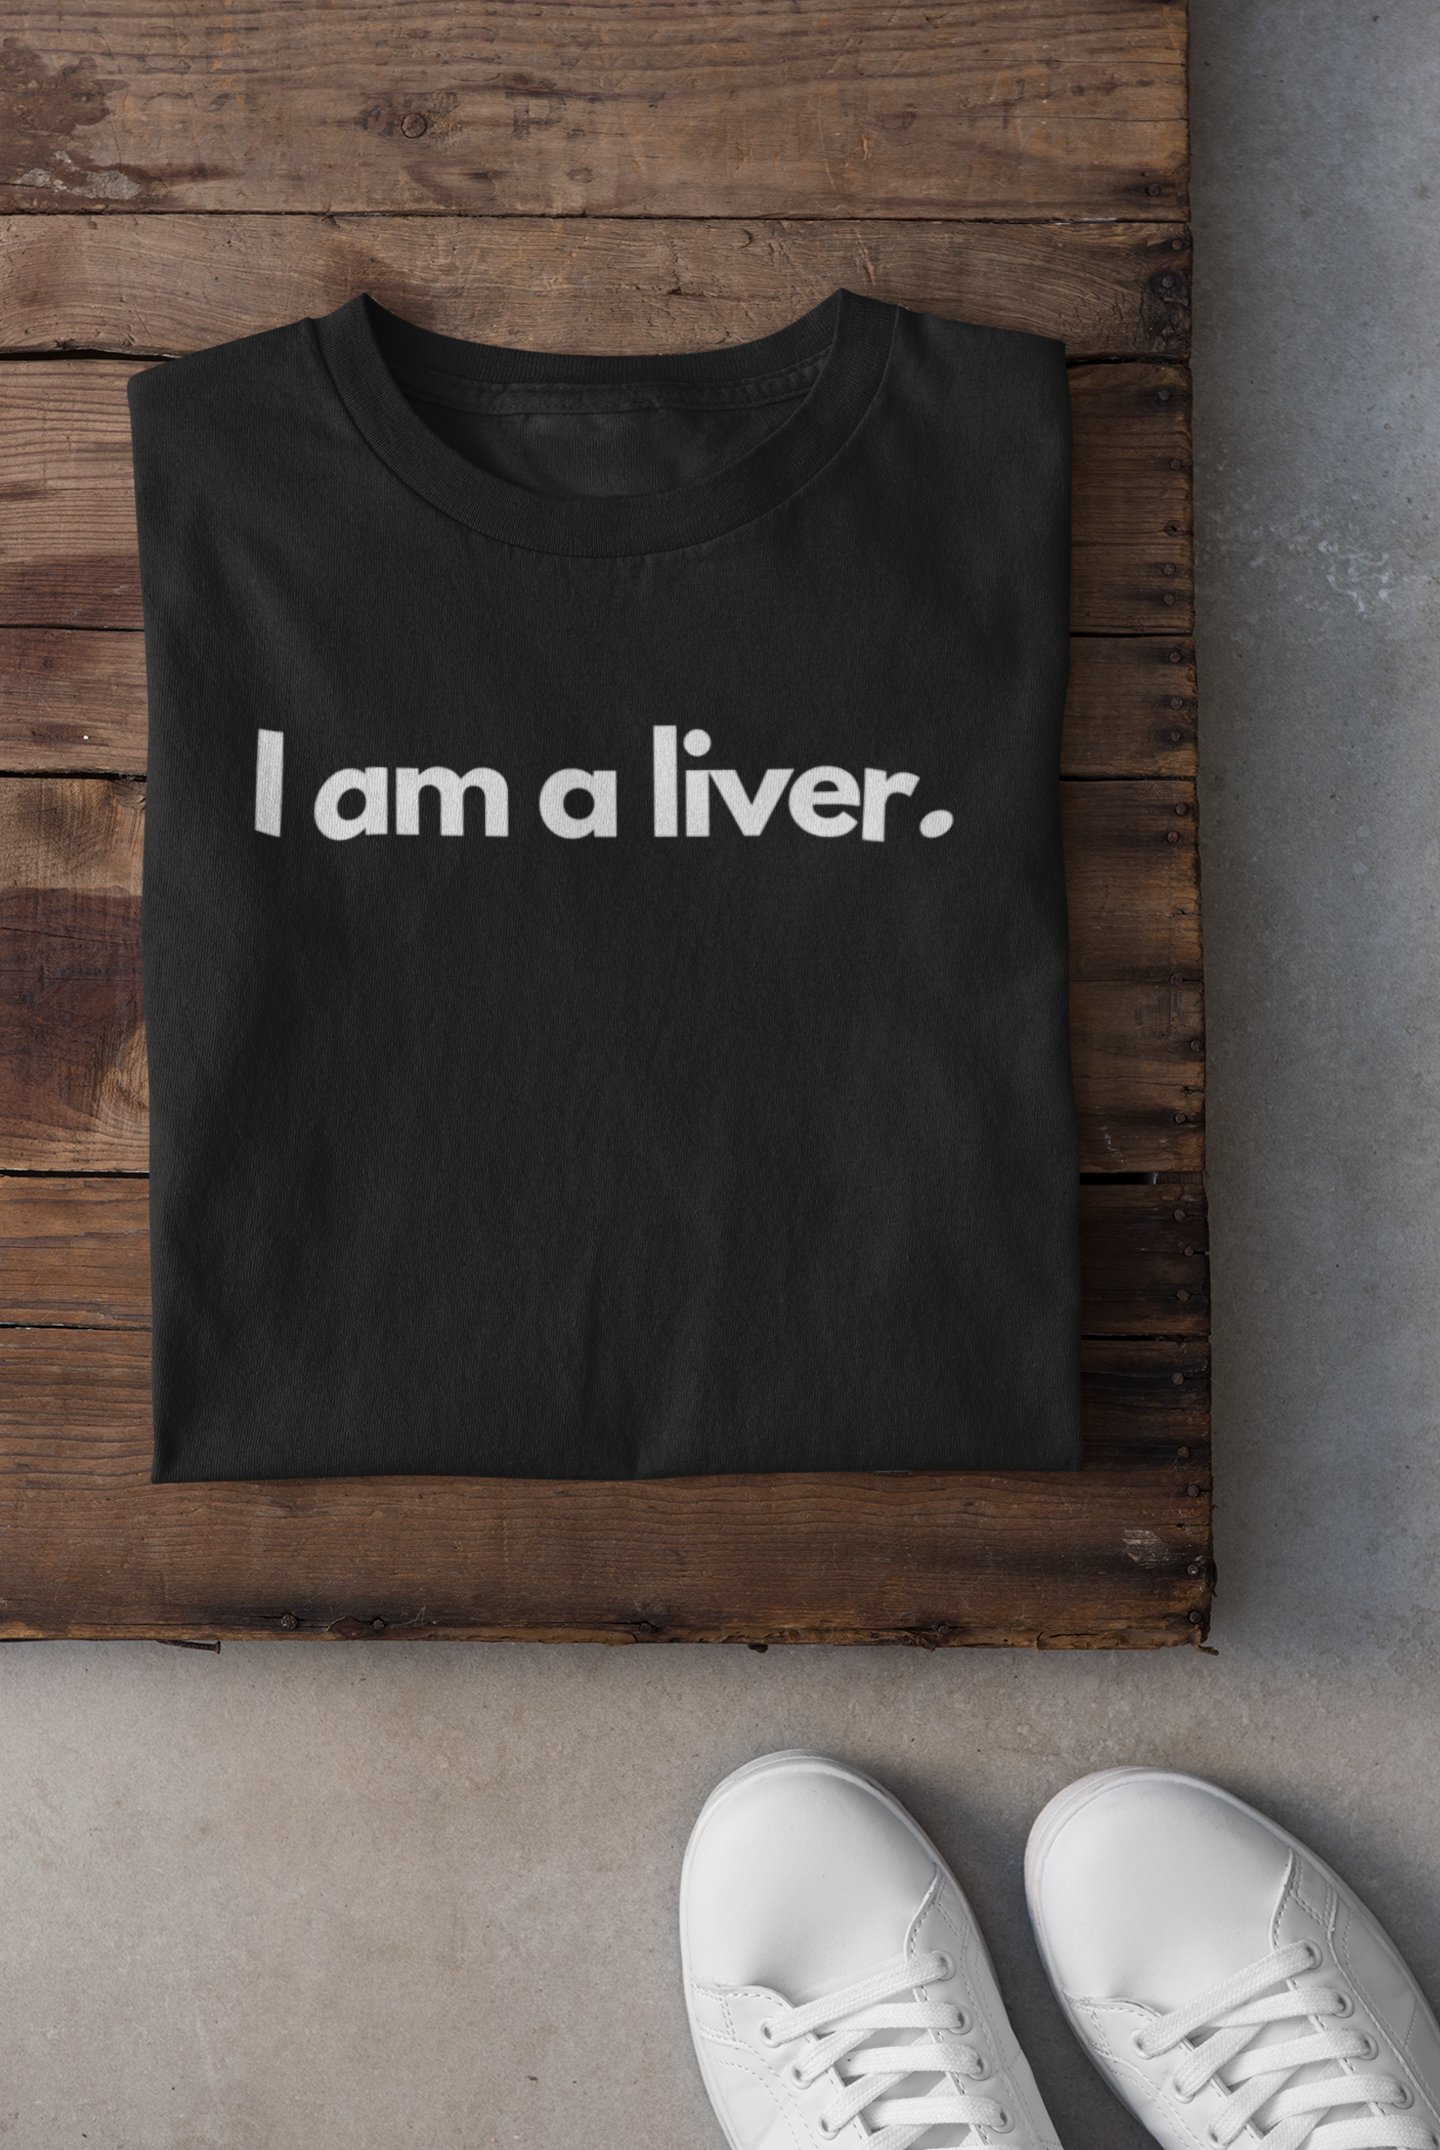 I AM A LIVER.